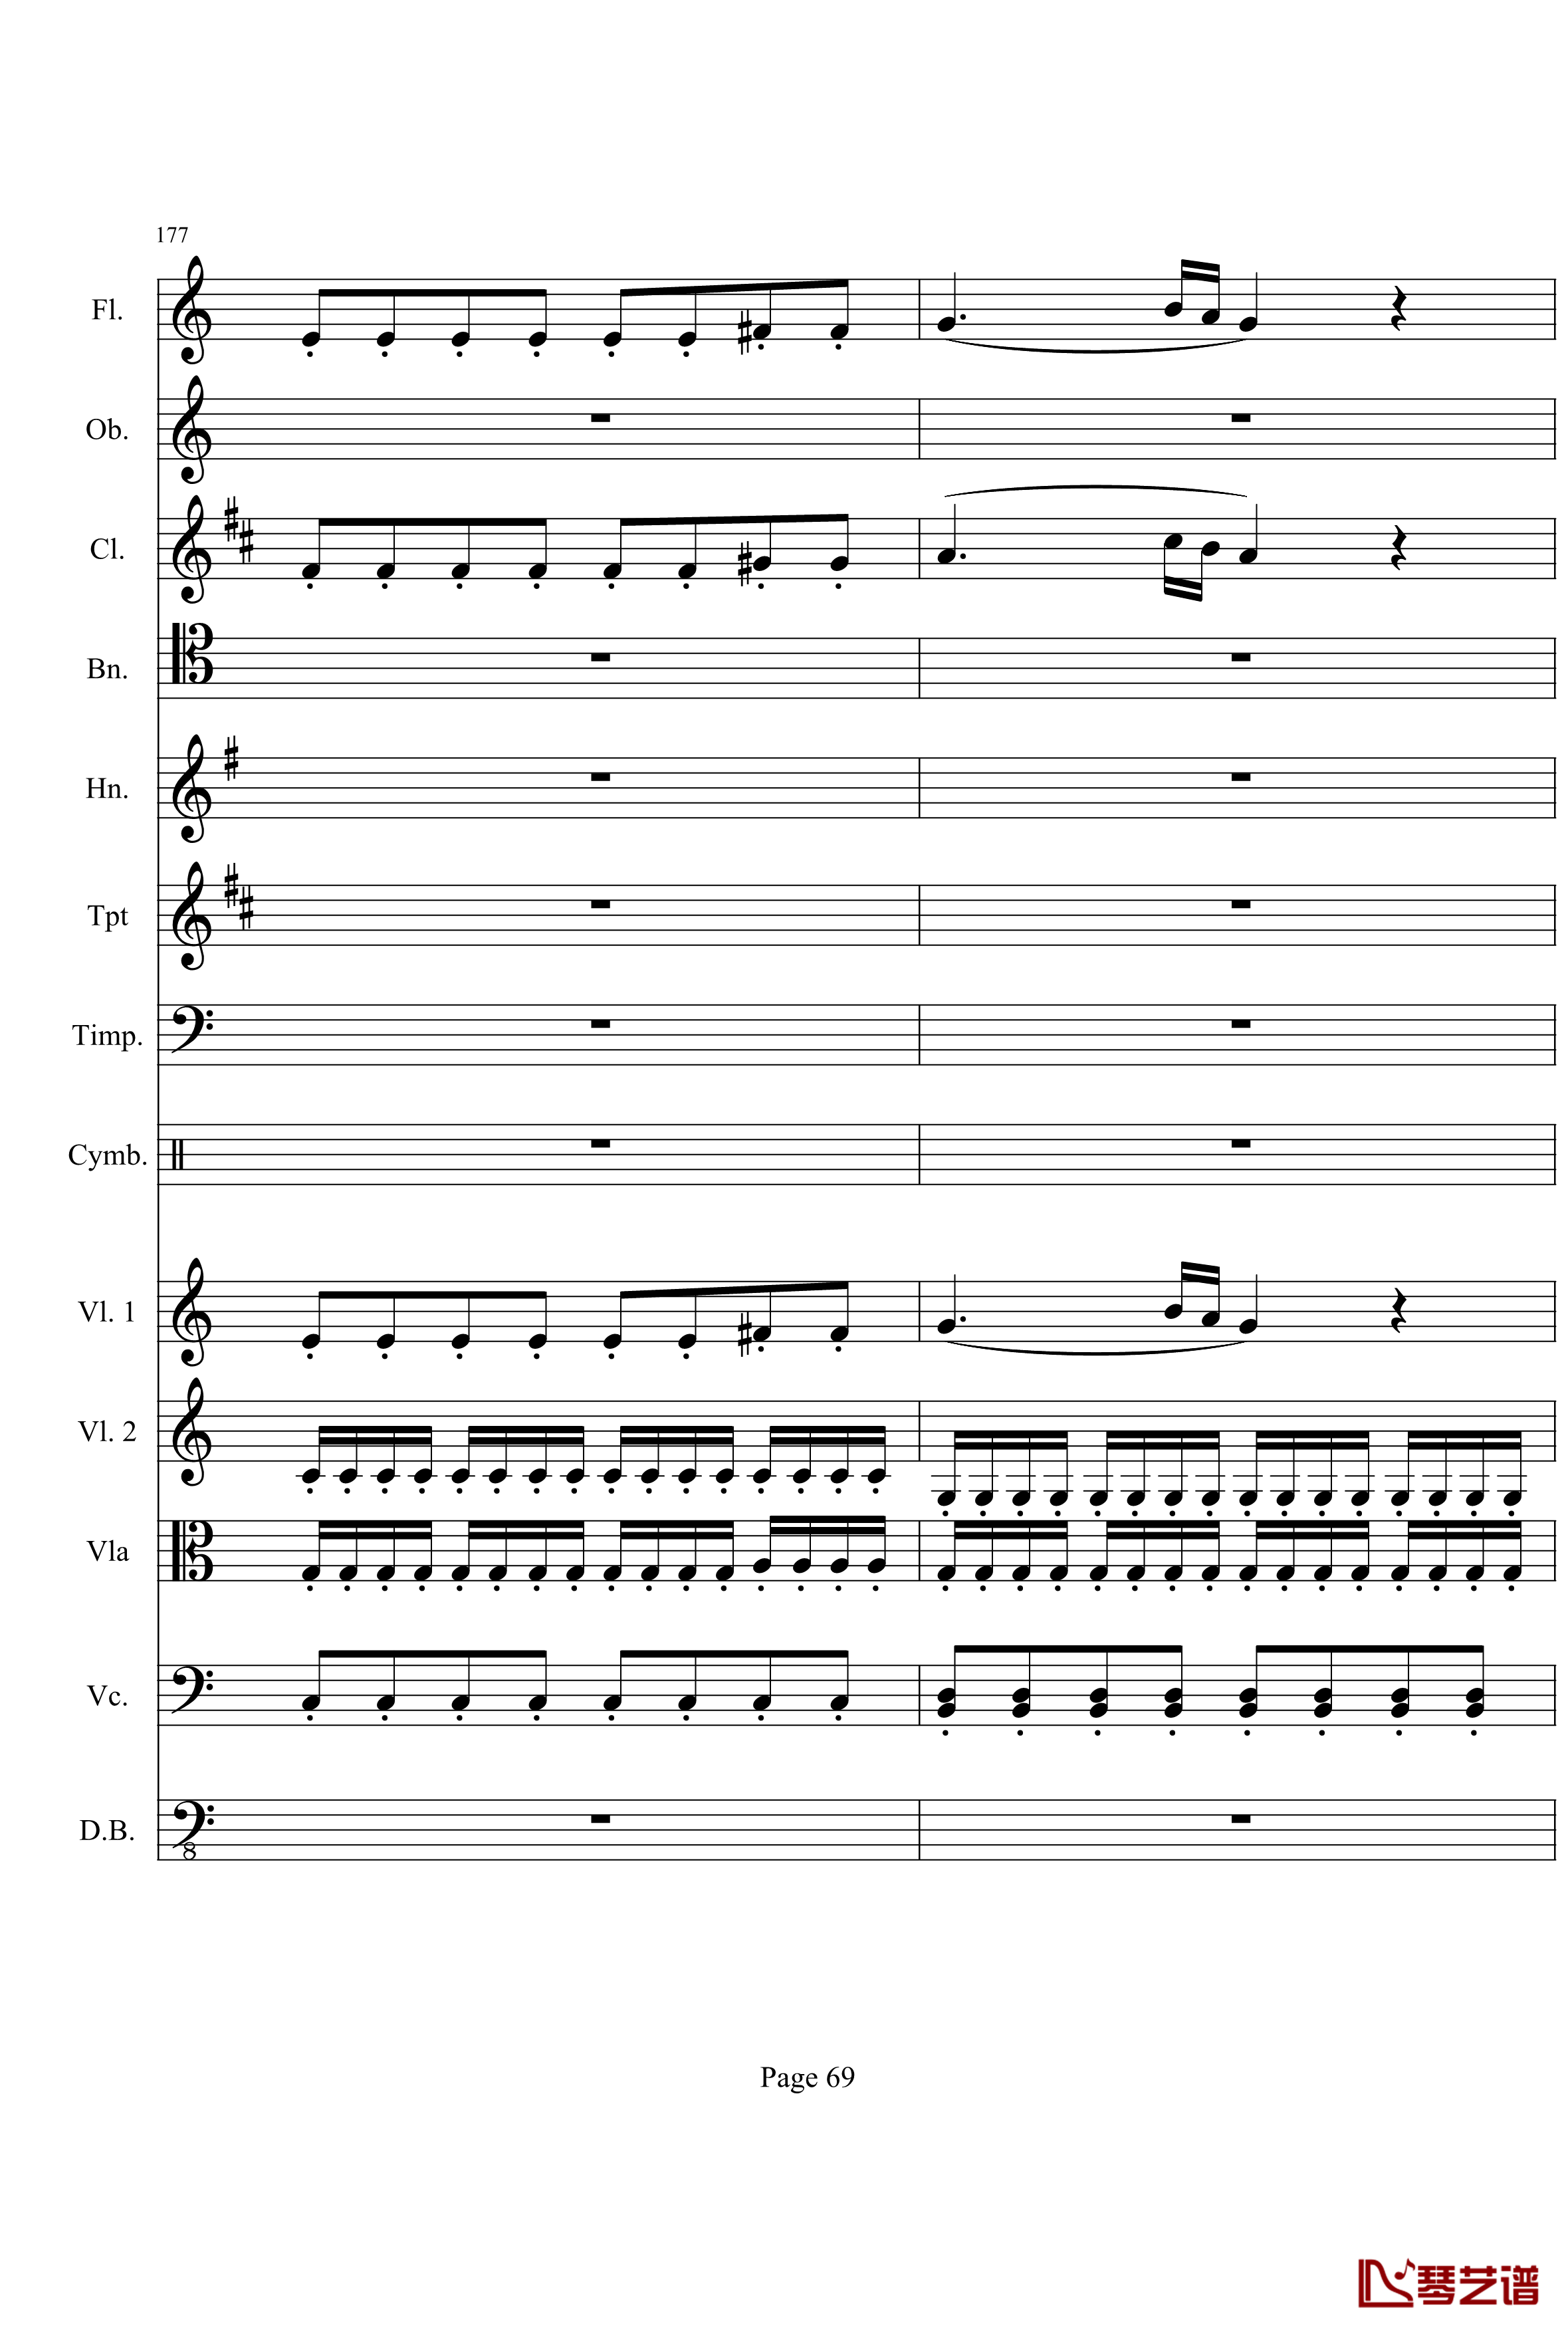 奏鸣曲之交响钢琴谱-第21首-Ⅰ-贝多芬-beethoven69